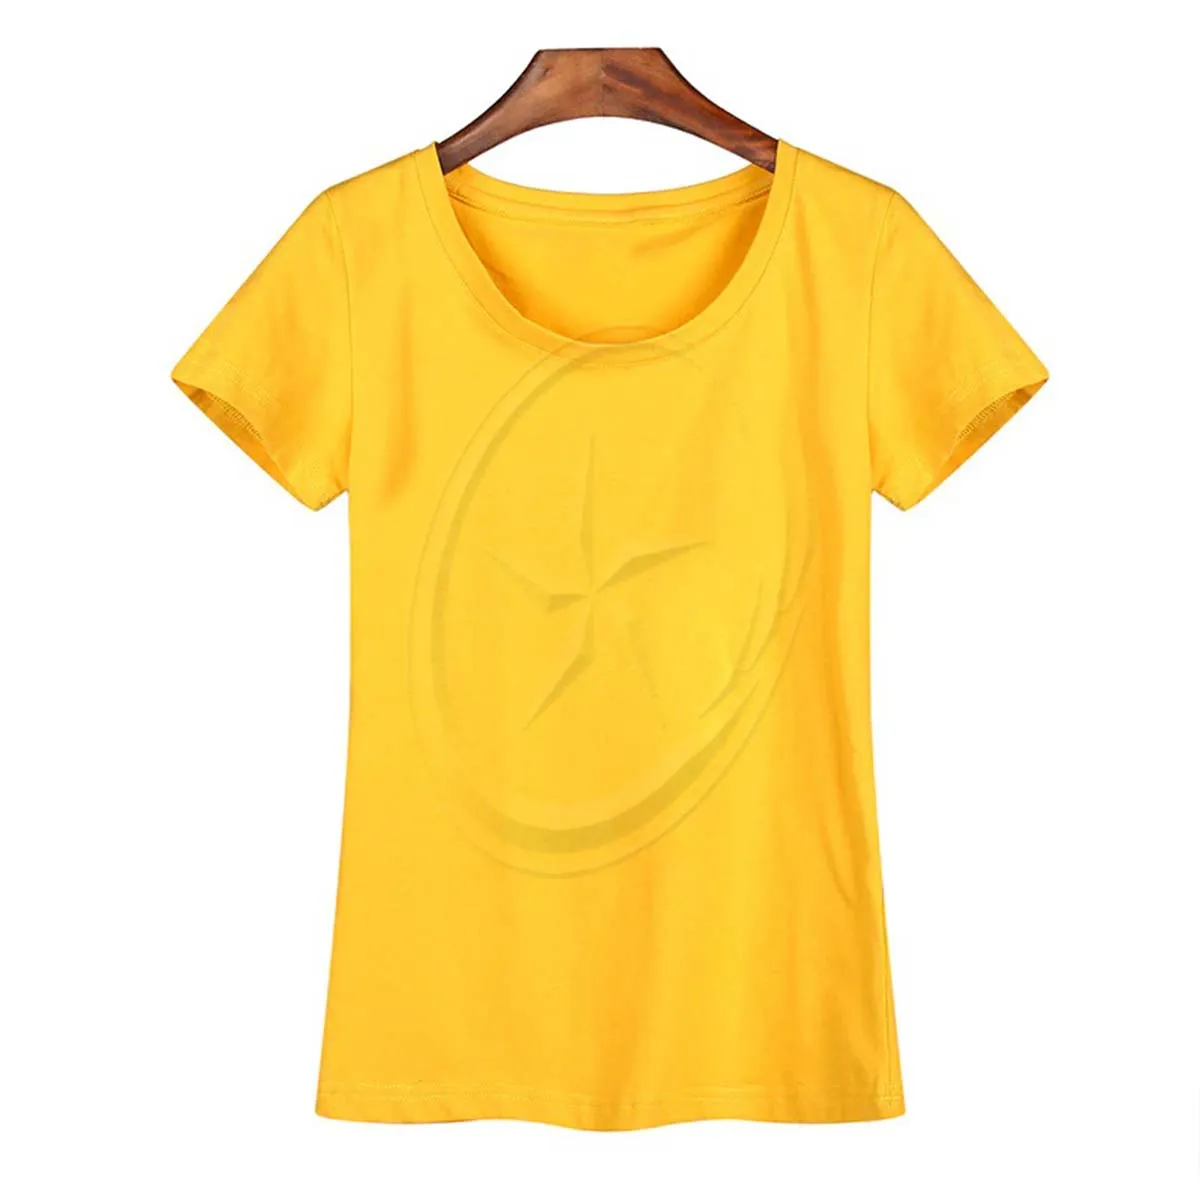 Kaus tipis Untuk kaus wanita pakaian baru merek OEM kaus wanita T-shirt wanita V-Neck rendah kaus wanita ketat